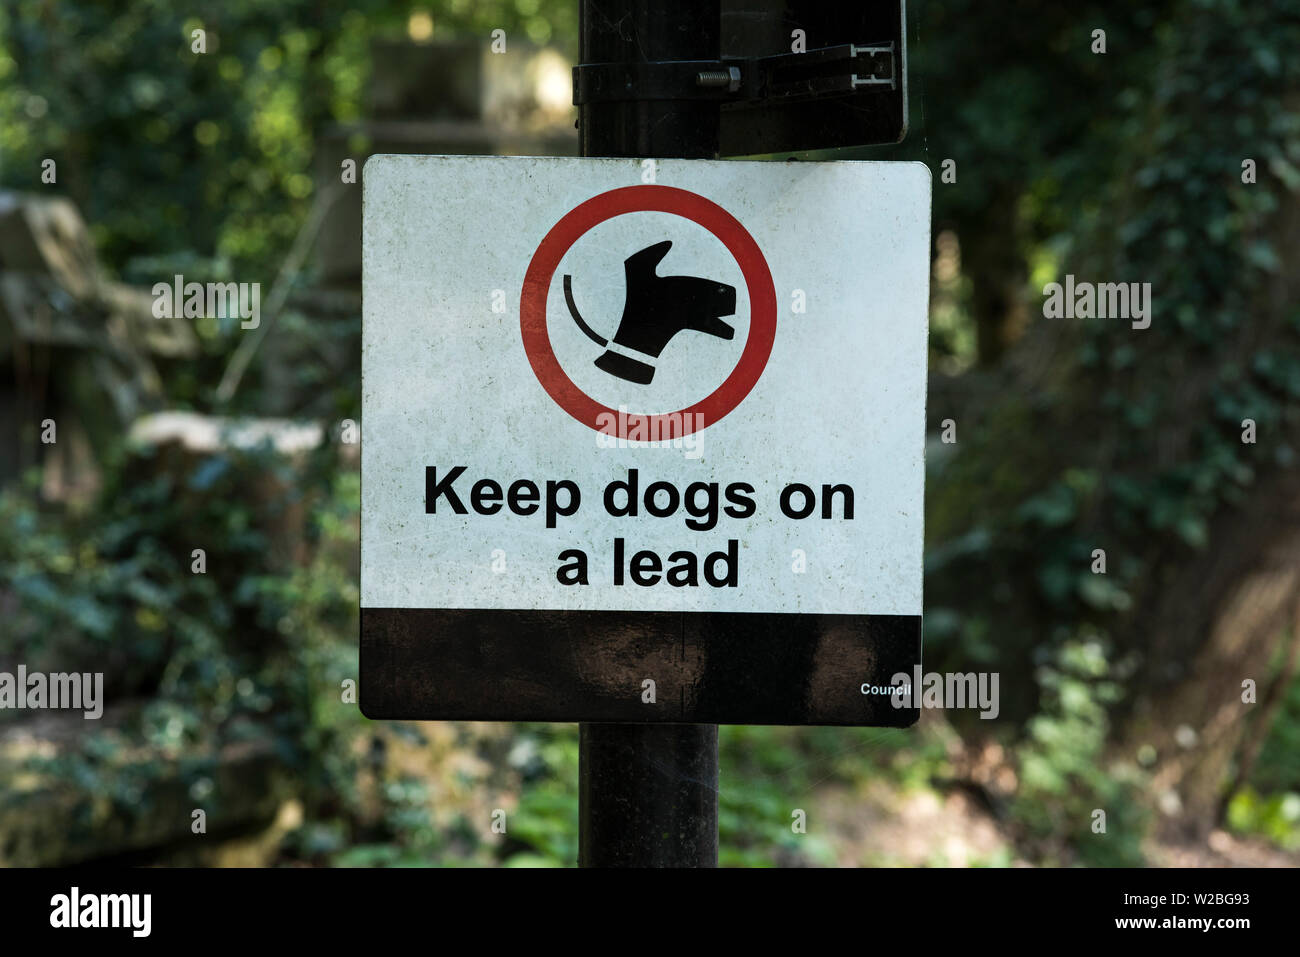 El Consejo firman que requieren los perros se mantengan en un conductor. Foto de stock